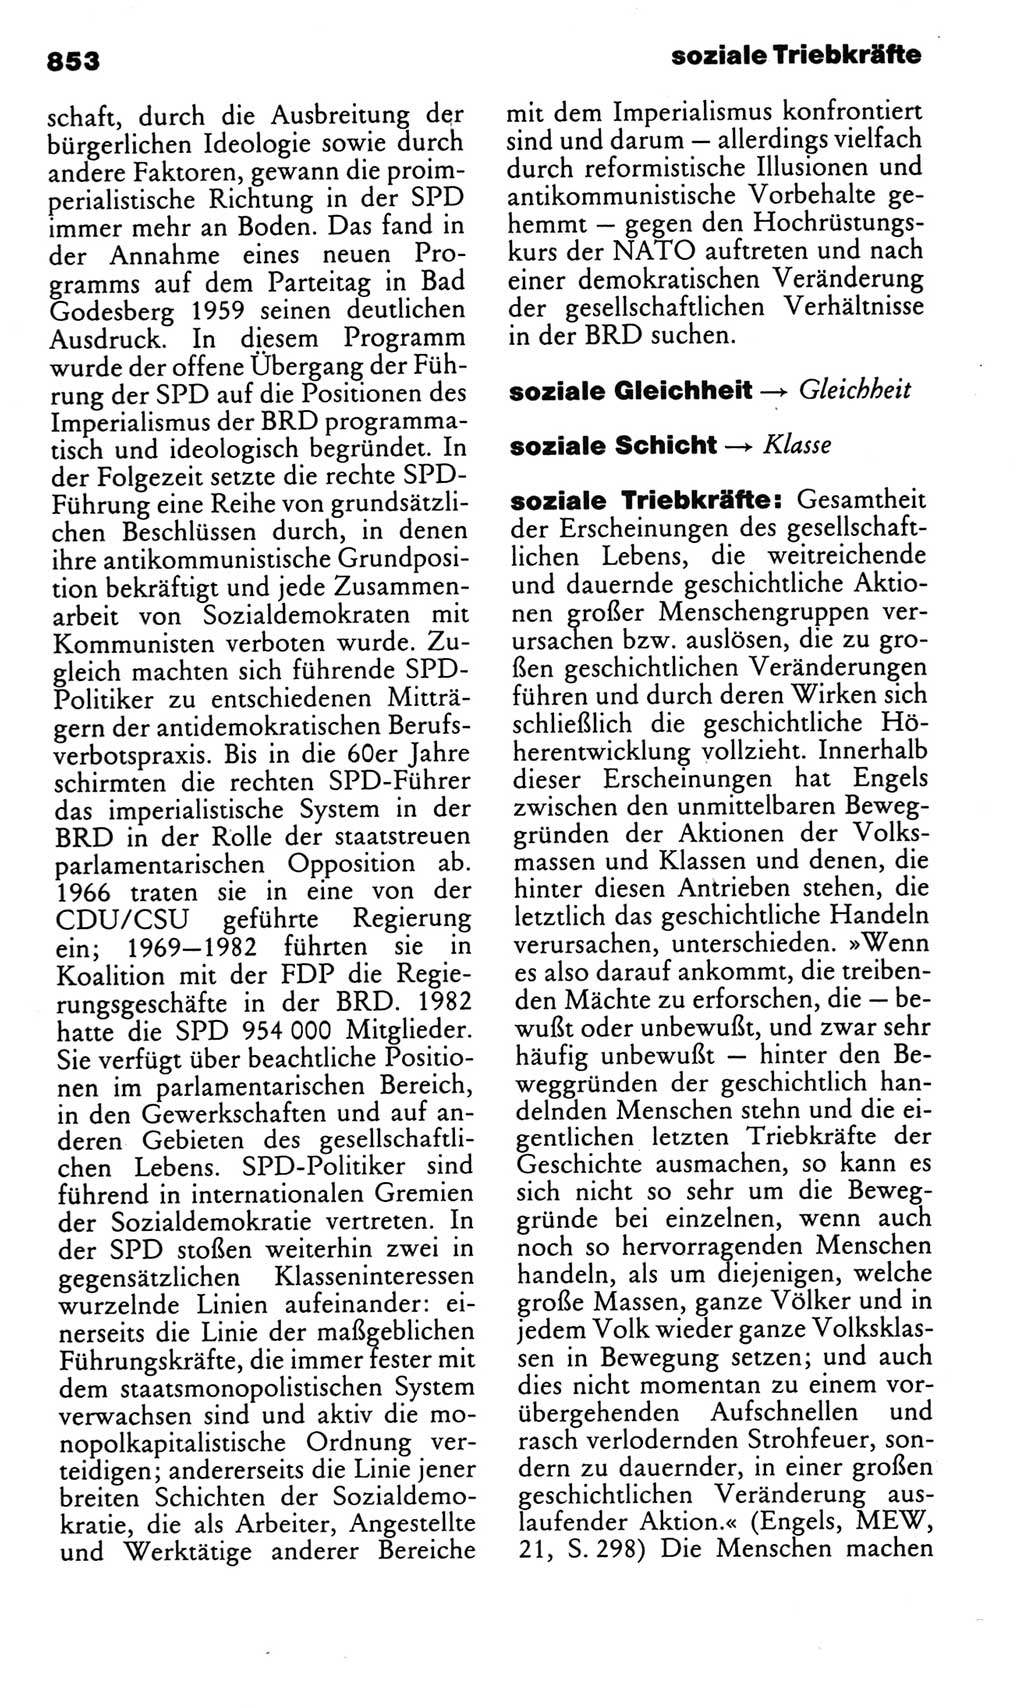 Kleines politisches Wörterbuch [Deutsche Demokratische Republik (DDR)] 1983, Seite 853 (Kl. pol. Wb. DDR 1983, S. 853)